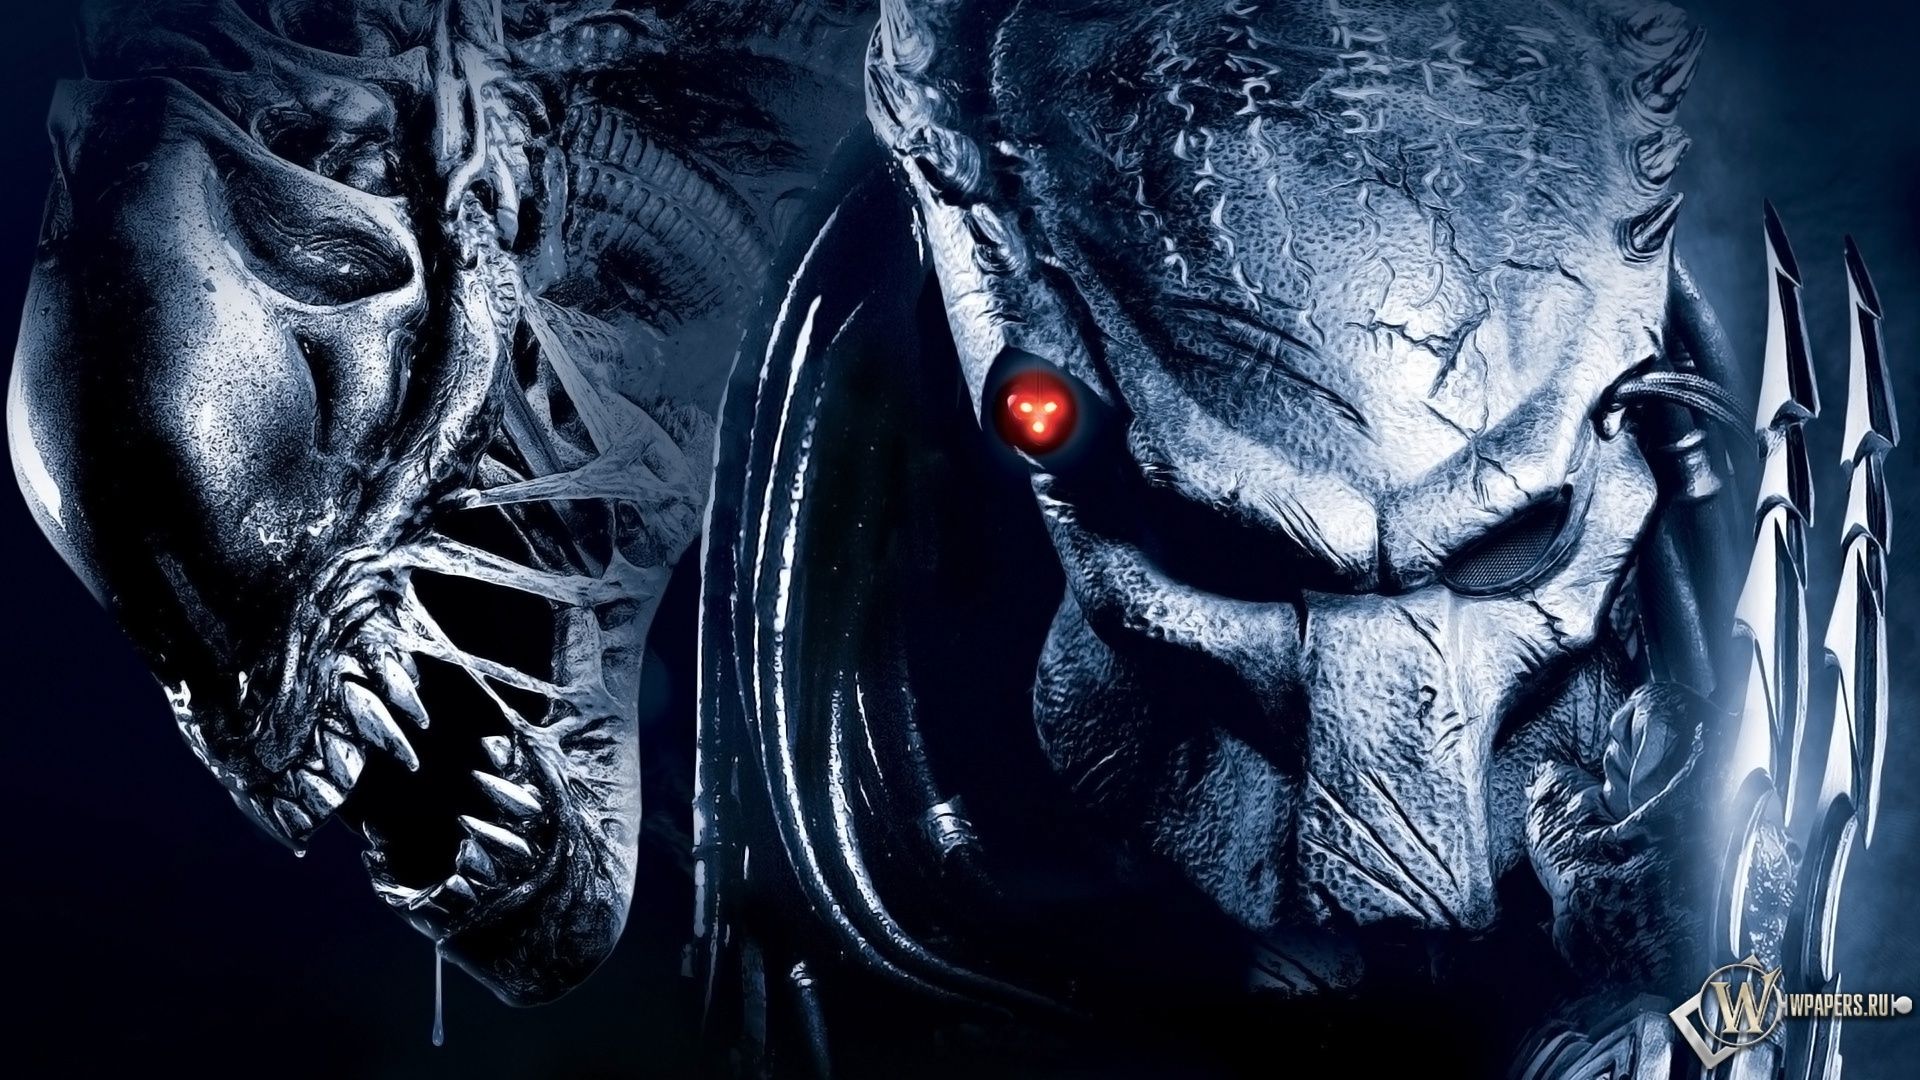 Alien vs predator Computer Wallpapers, Desktop Backgrounds